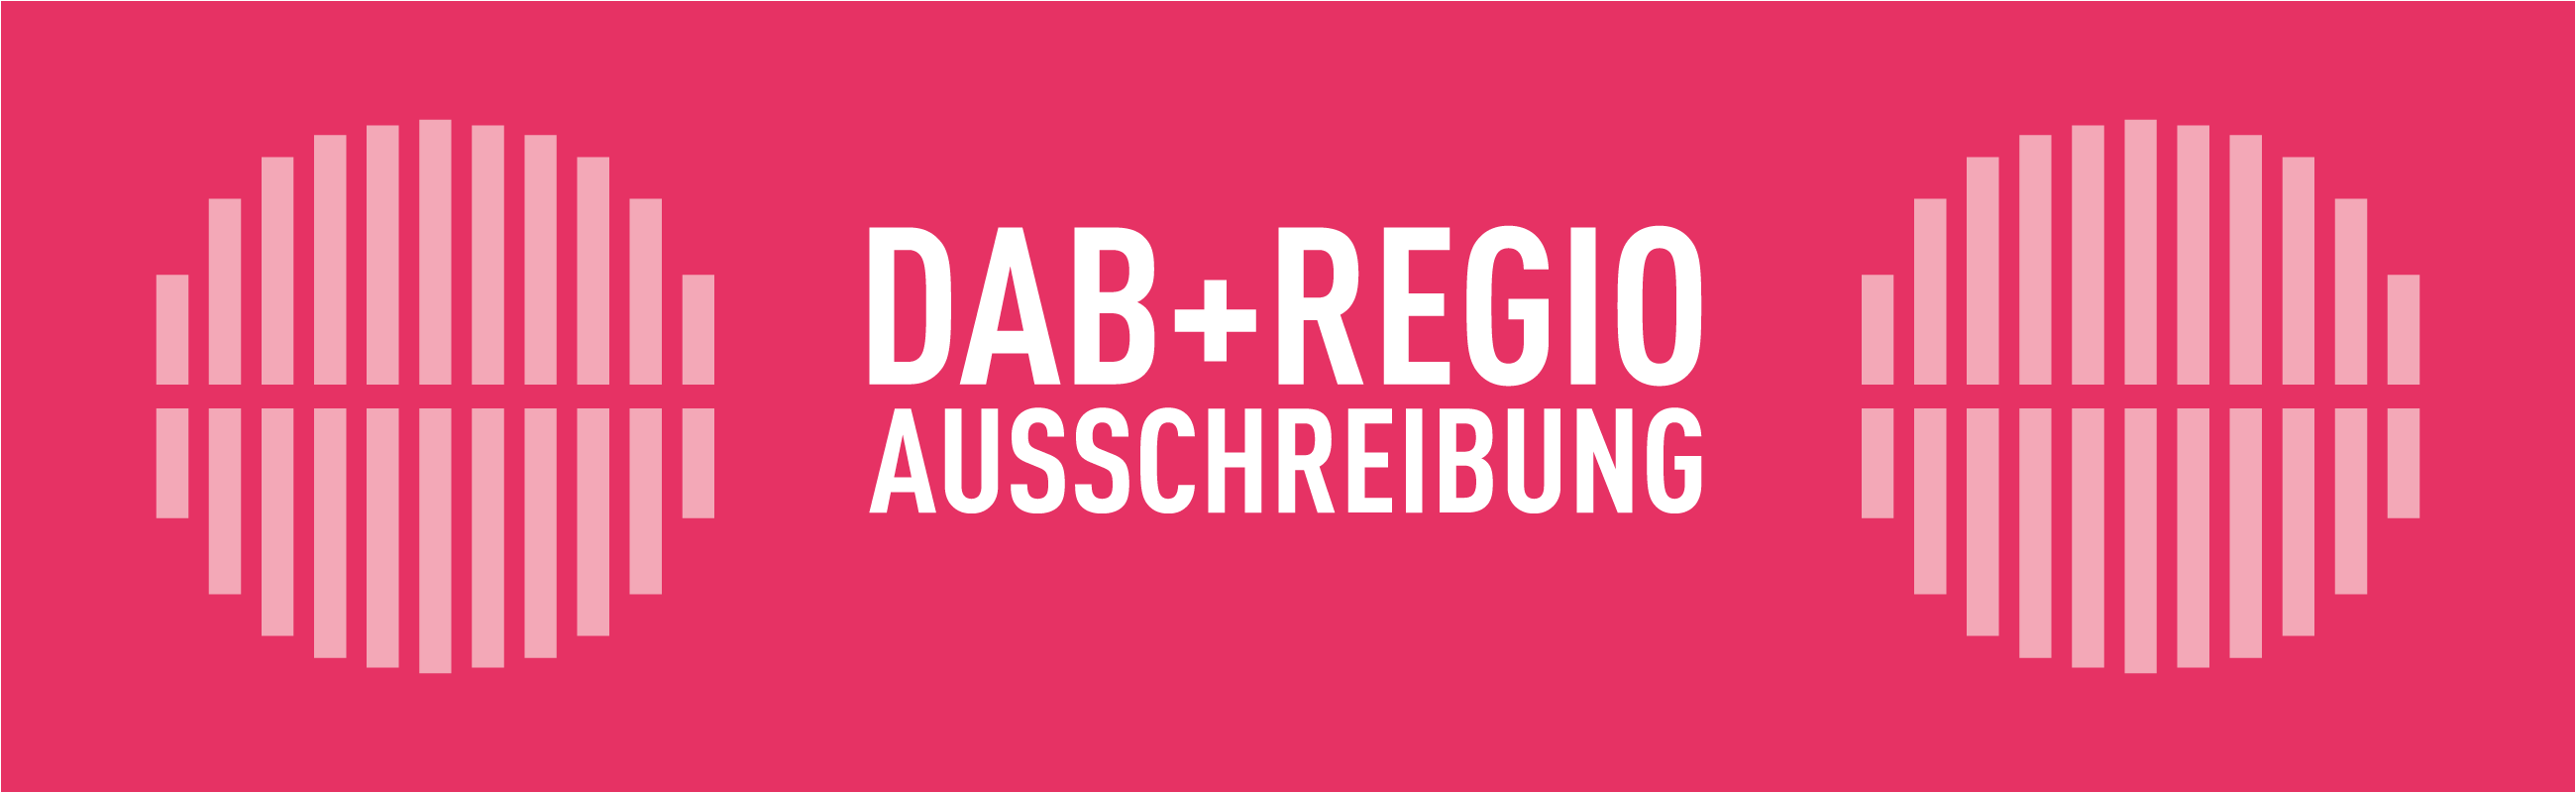 Ausschreibung zu DAB+Regio in NRW gestartet